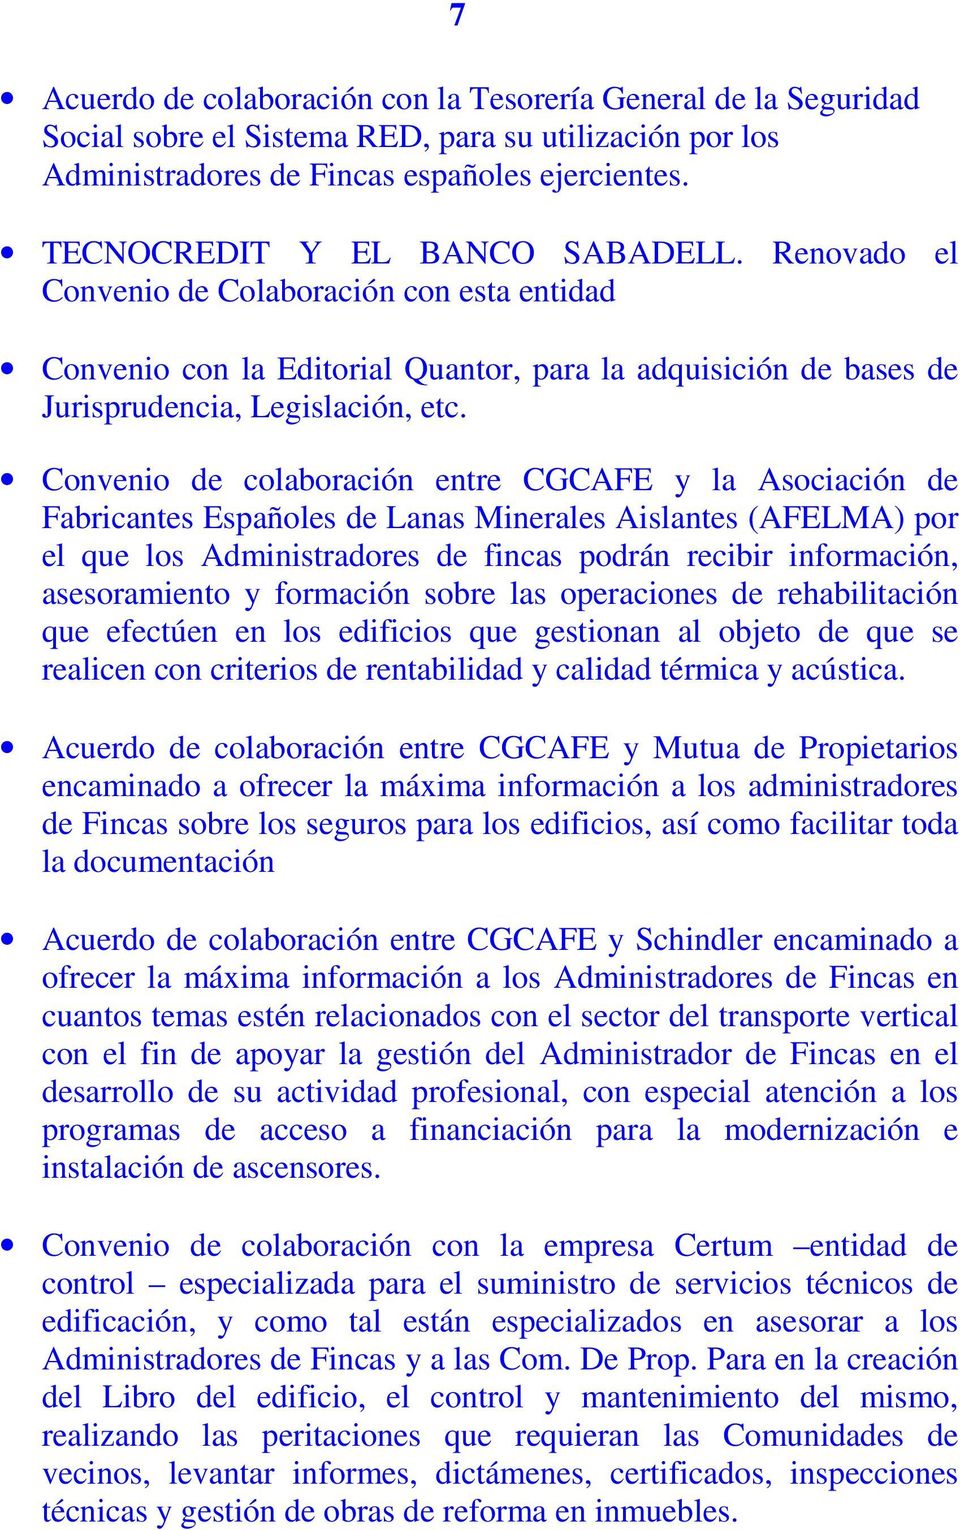 Convenio de colaboración entre CGCAFE y la Asociación de Fabricantes Españoles de Lanas Minerales Aislantes (AFELMA) por el que los Administradores de fincas podrán recibir información, asesoramiento